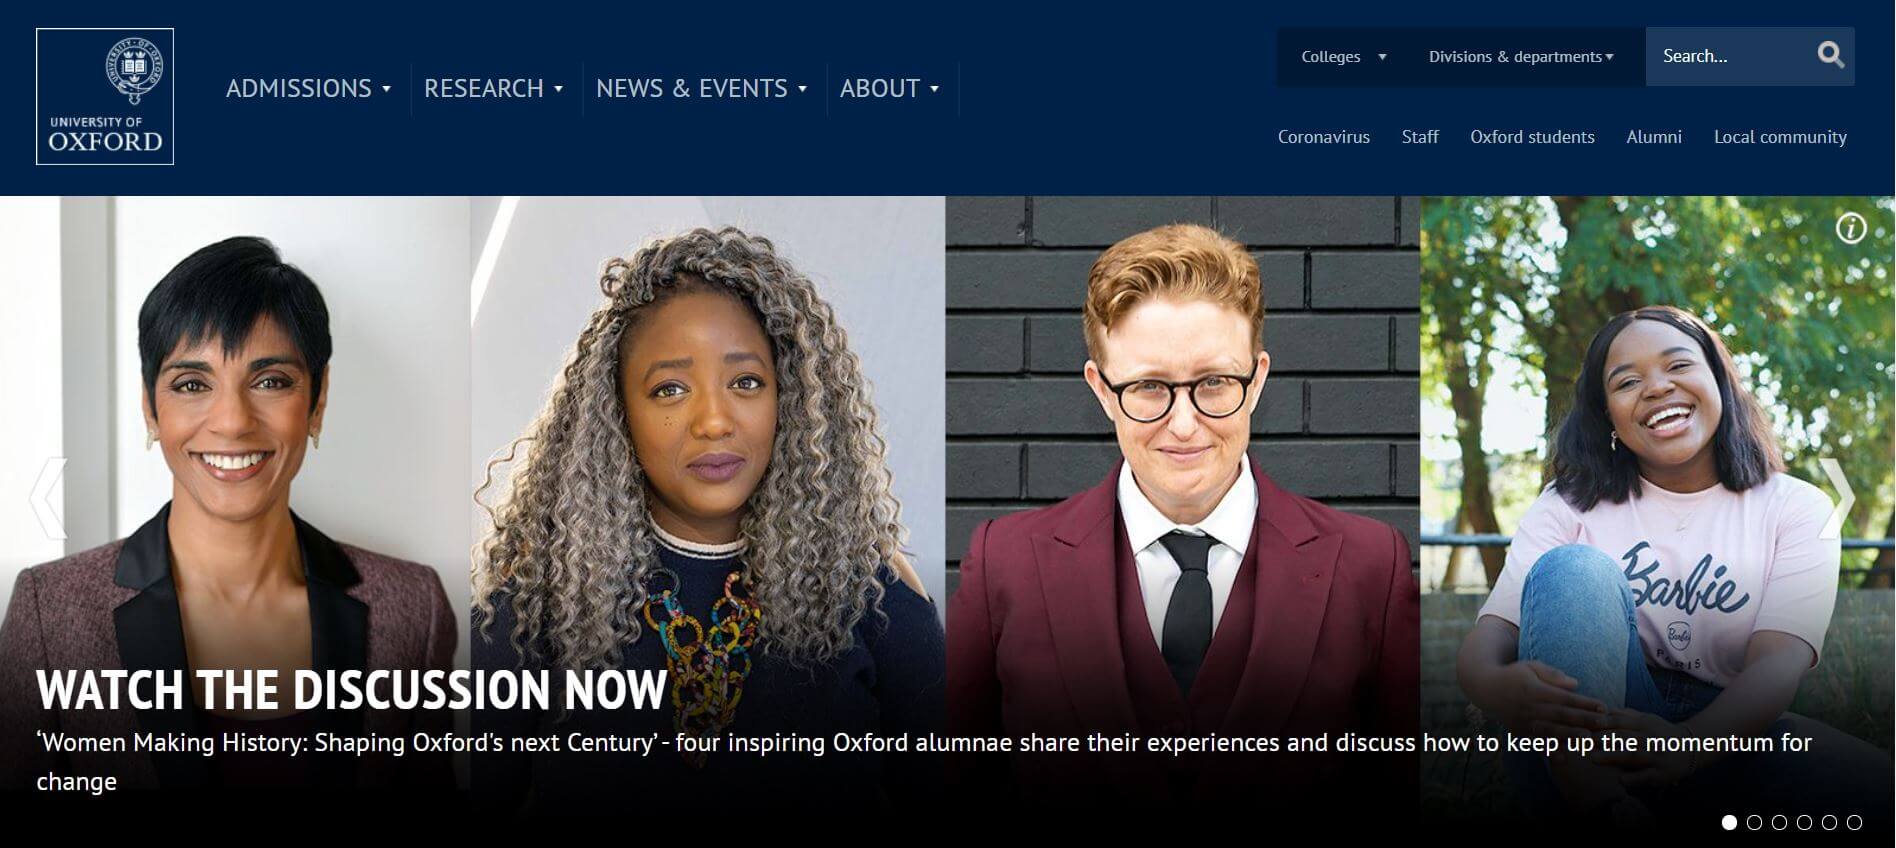 The Oxford University's website on Drupal